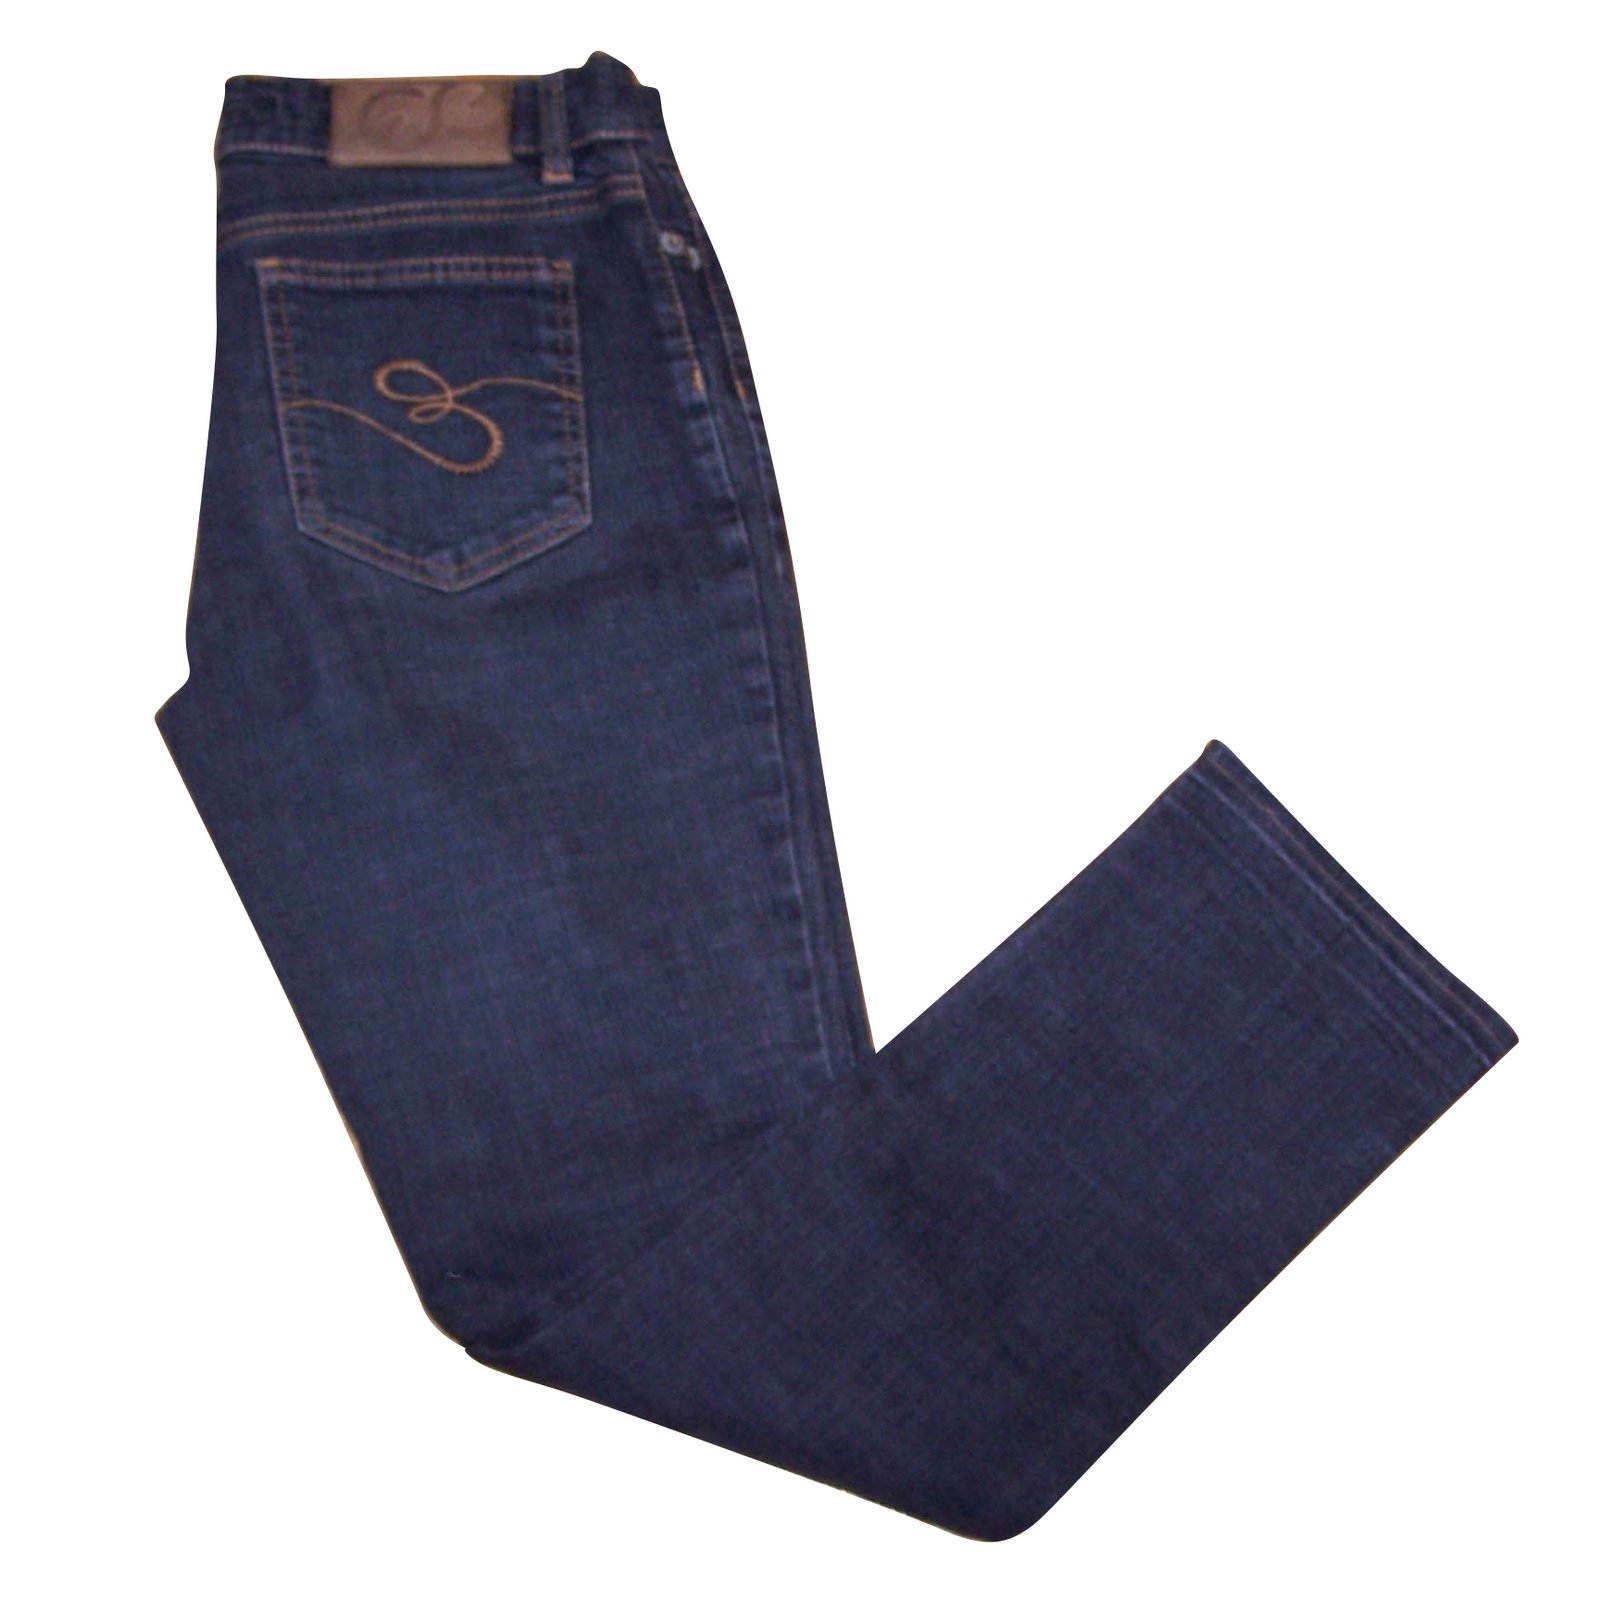 https://cdn1.jolicloset.com/imgr/full/2018/06/71409-1/escada-dark-grey-cotton-jeans.jpg